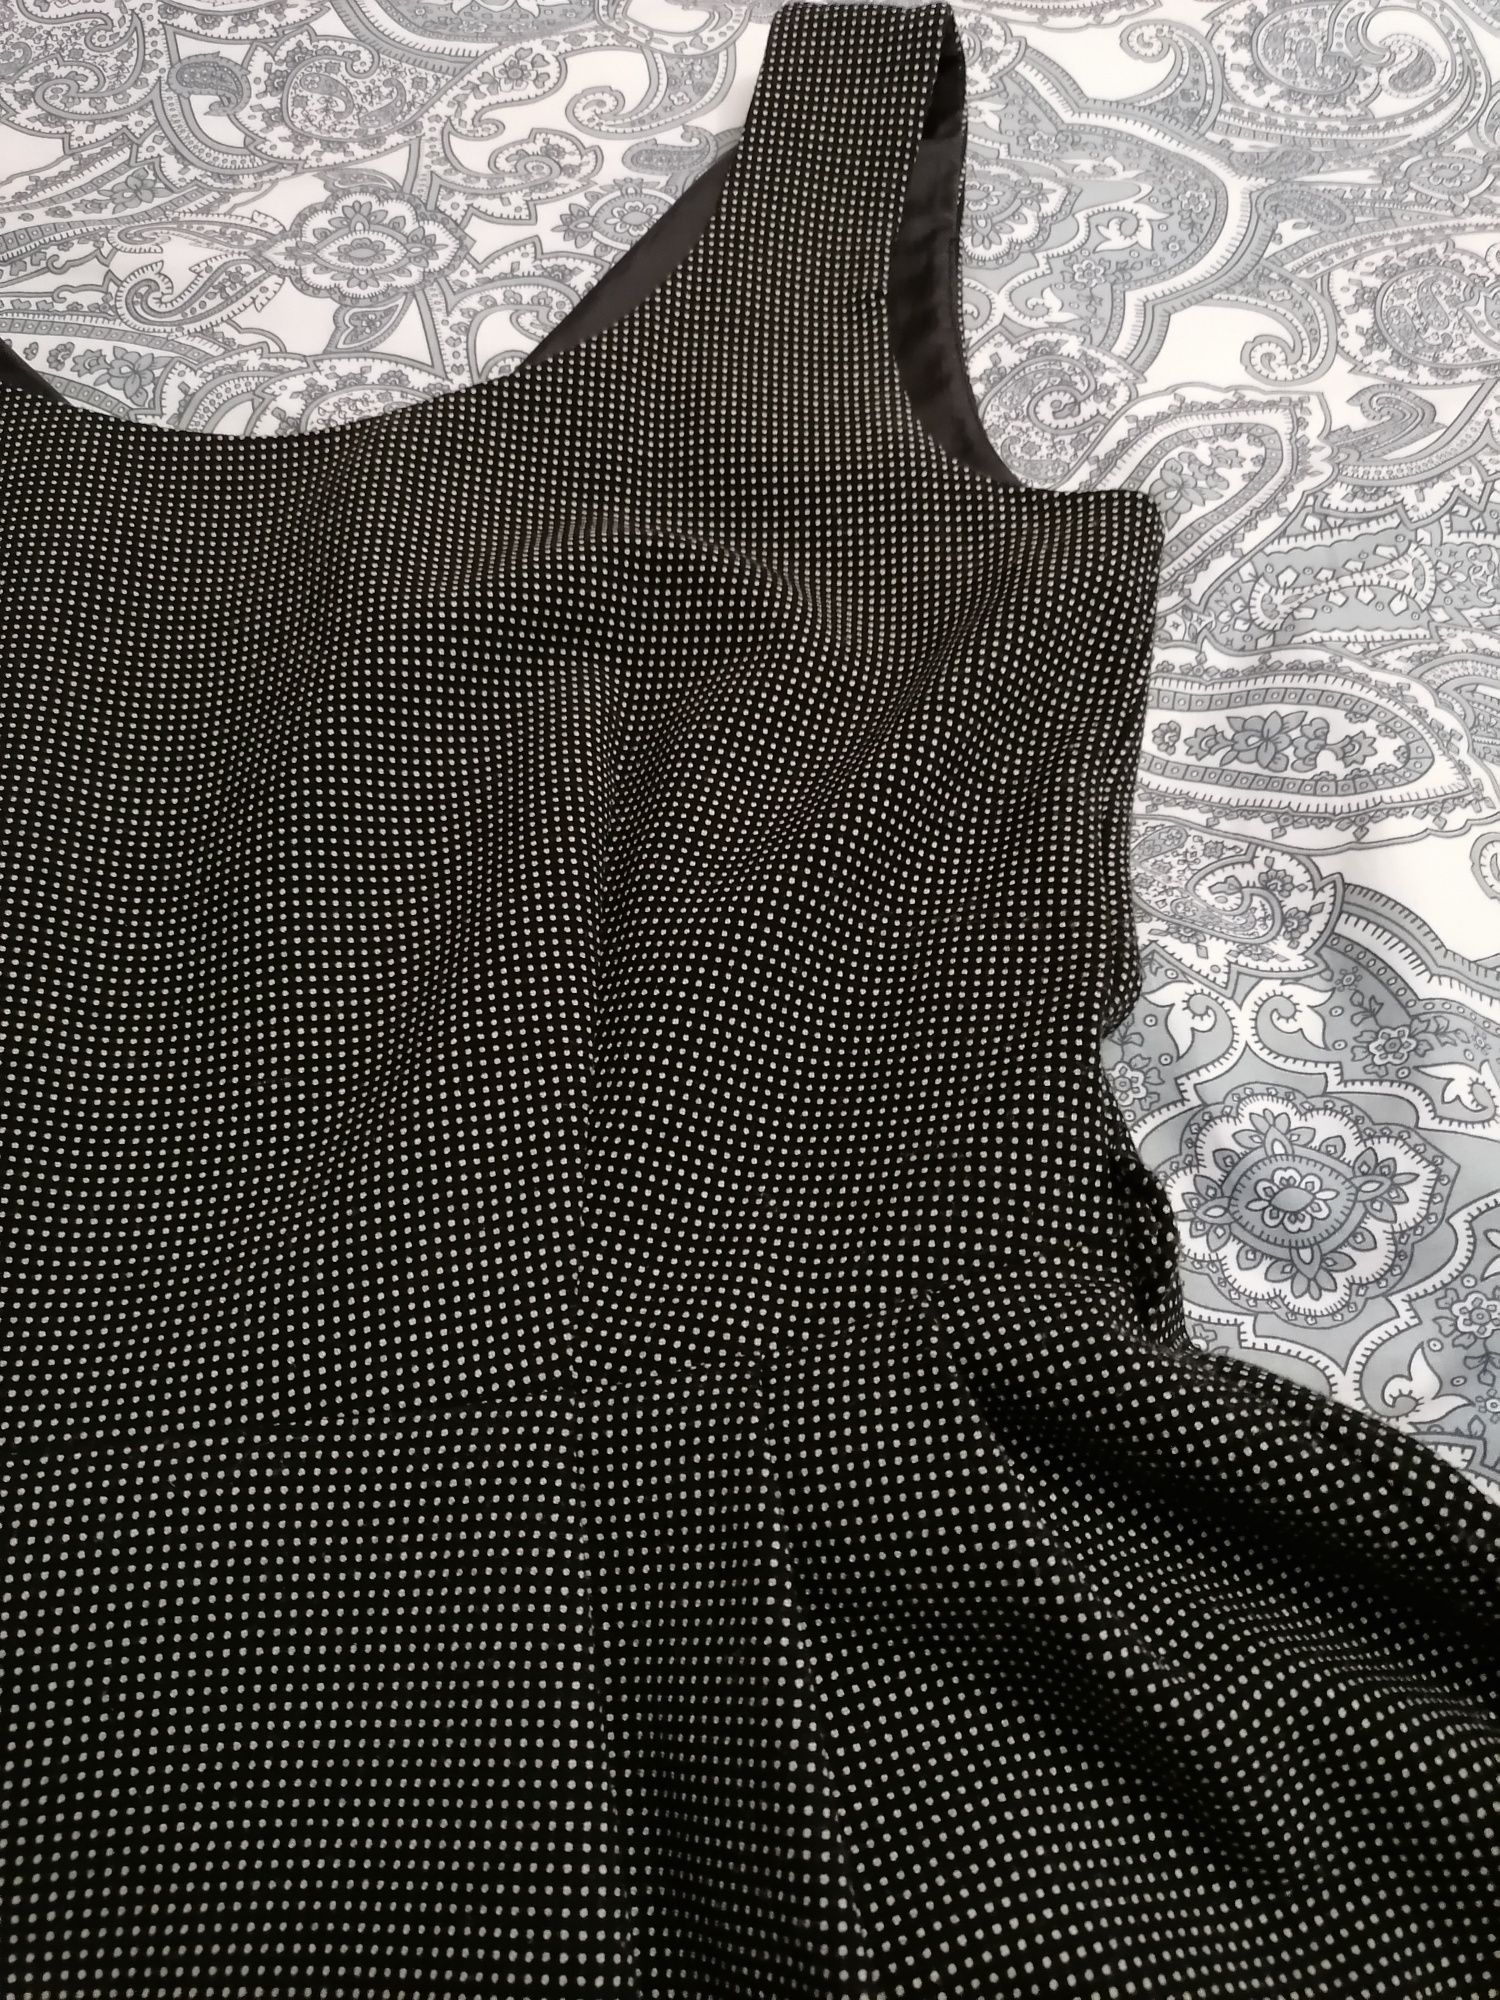 NEXT, sukienka midi, r. 8, S/M, czarna w groszki/kropeczki, Vintage